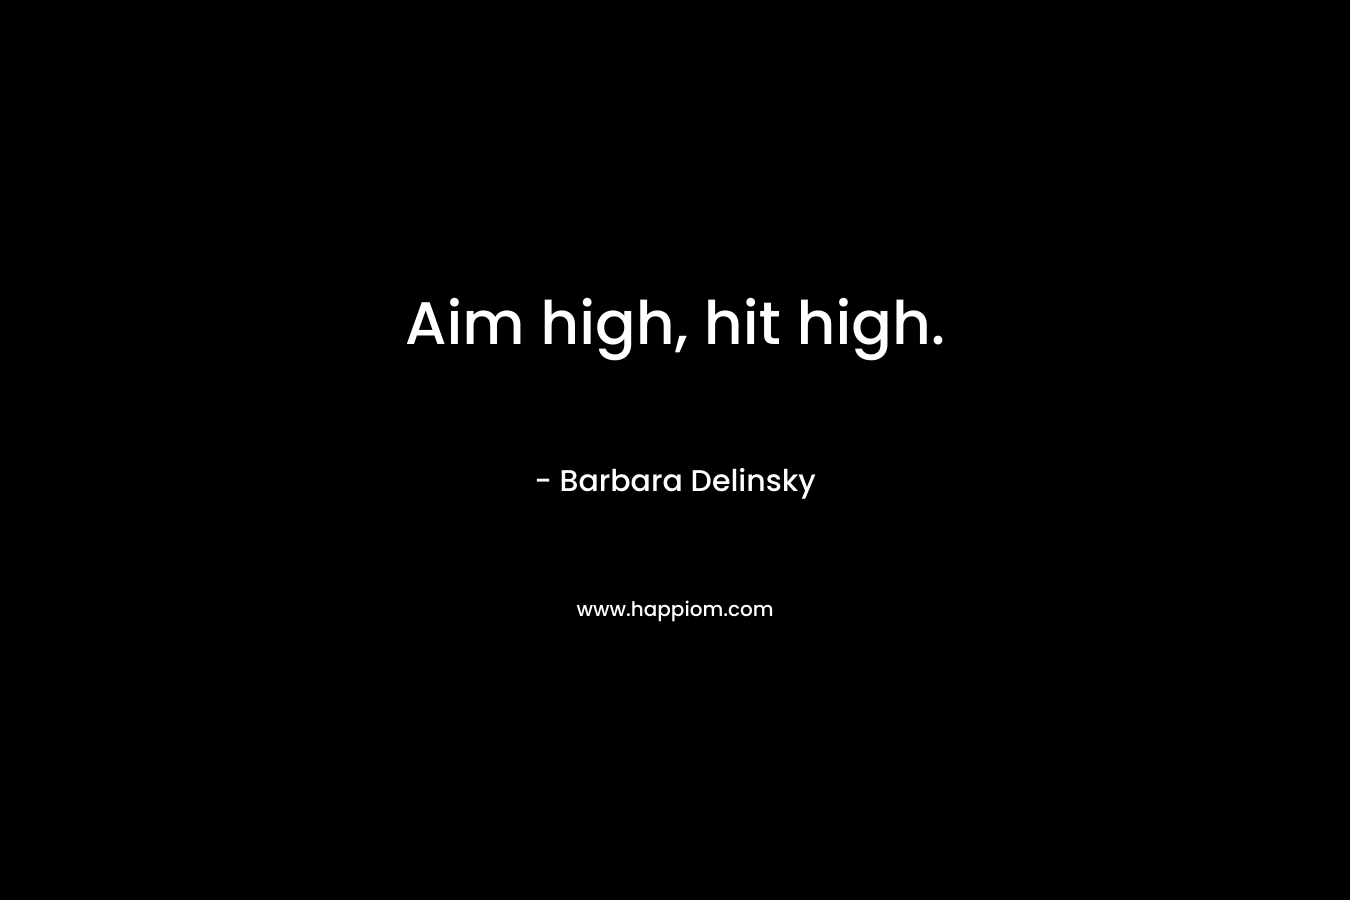 Aim high, hit high.